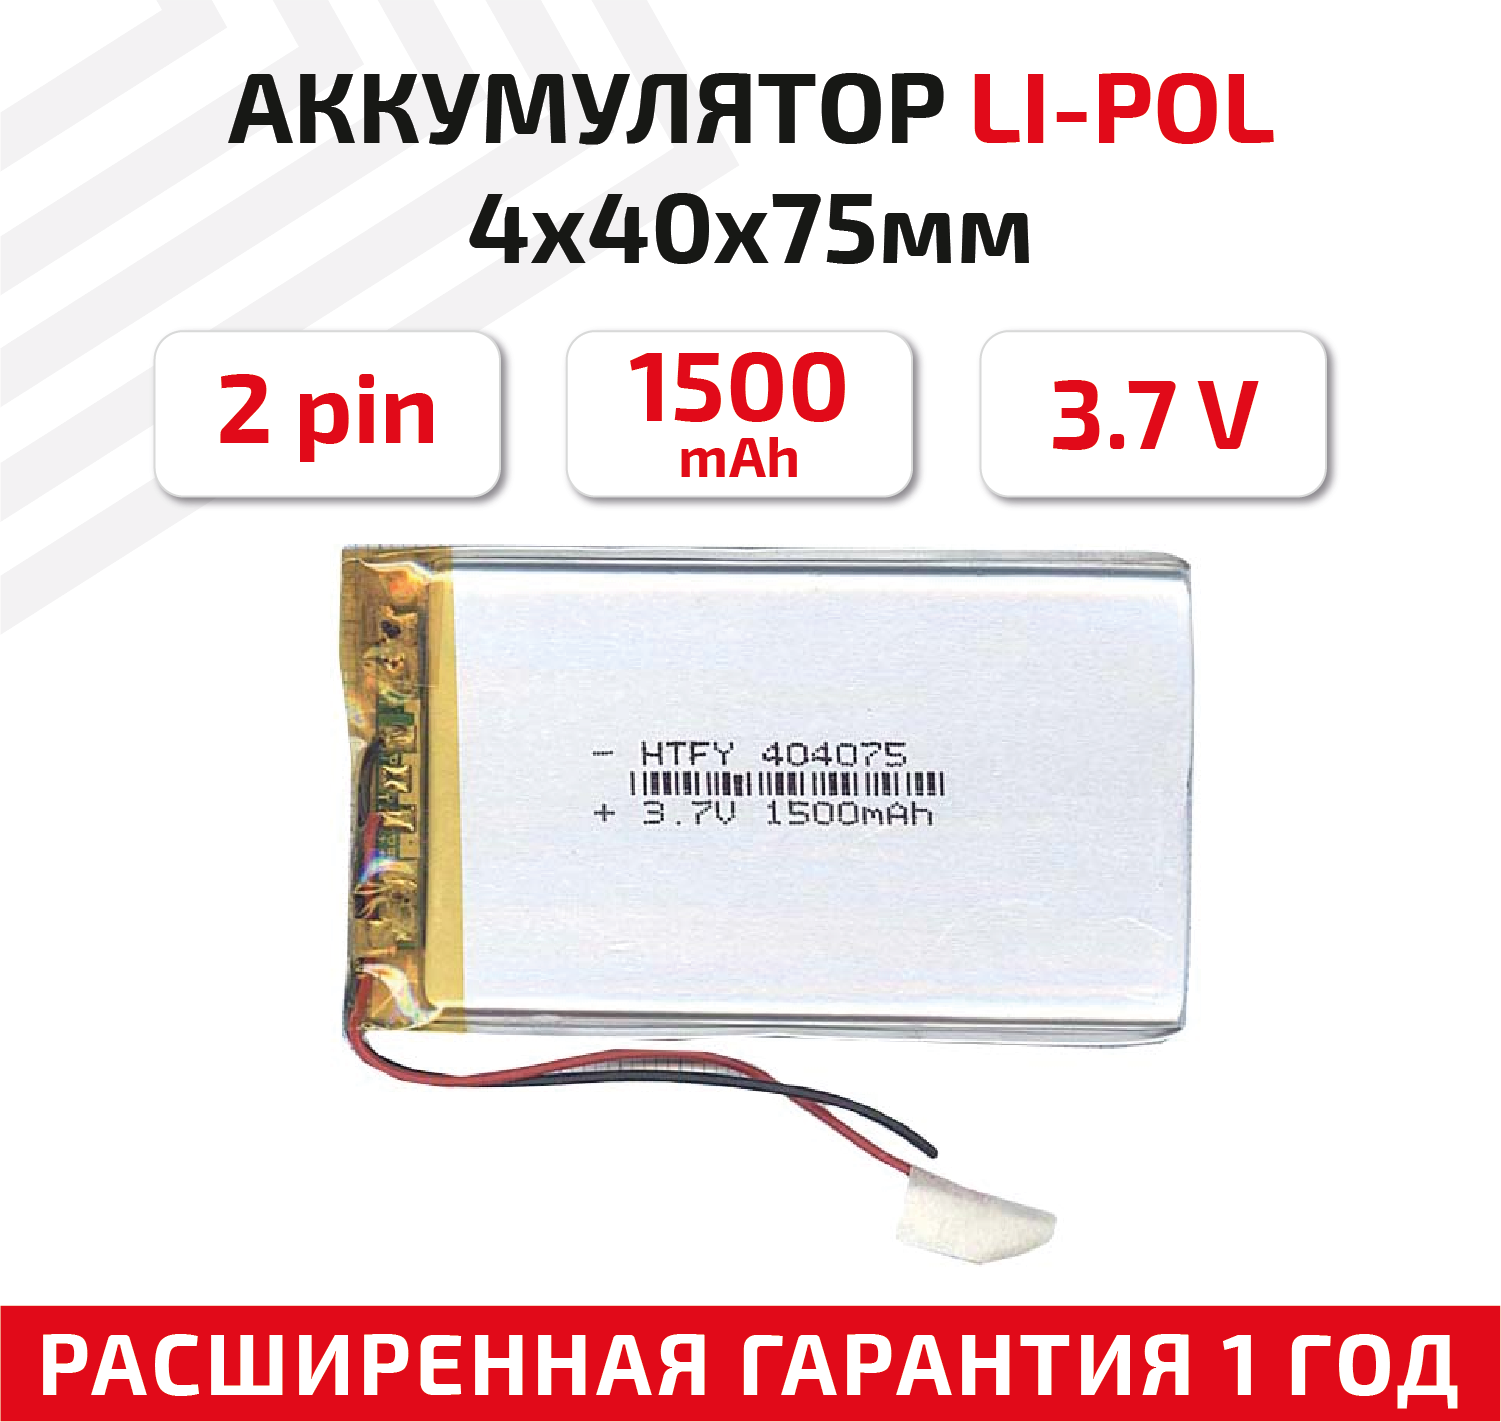 Универсальный аккумулятор (АКБ) для планшета, видеорегистратора и др, 4х40х75мм, 1500мАч, 3.7В, Li-Pol, 2pin (на 2 провода)